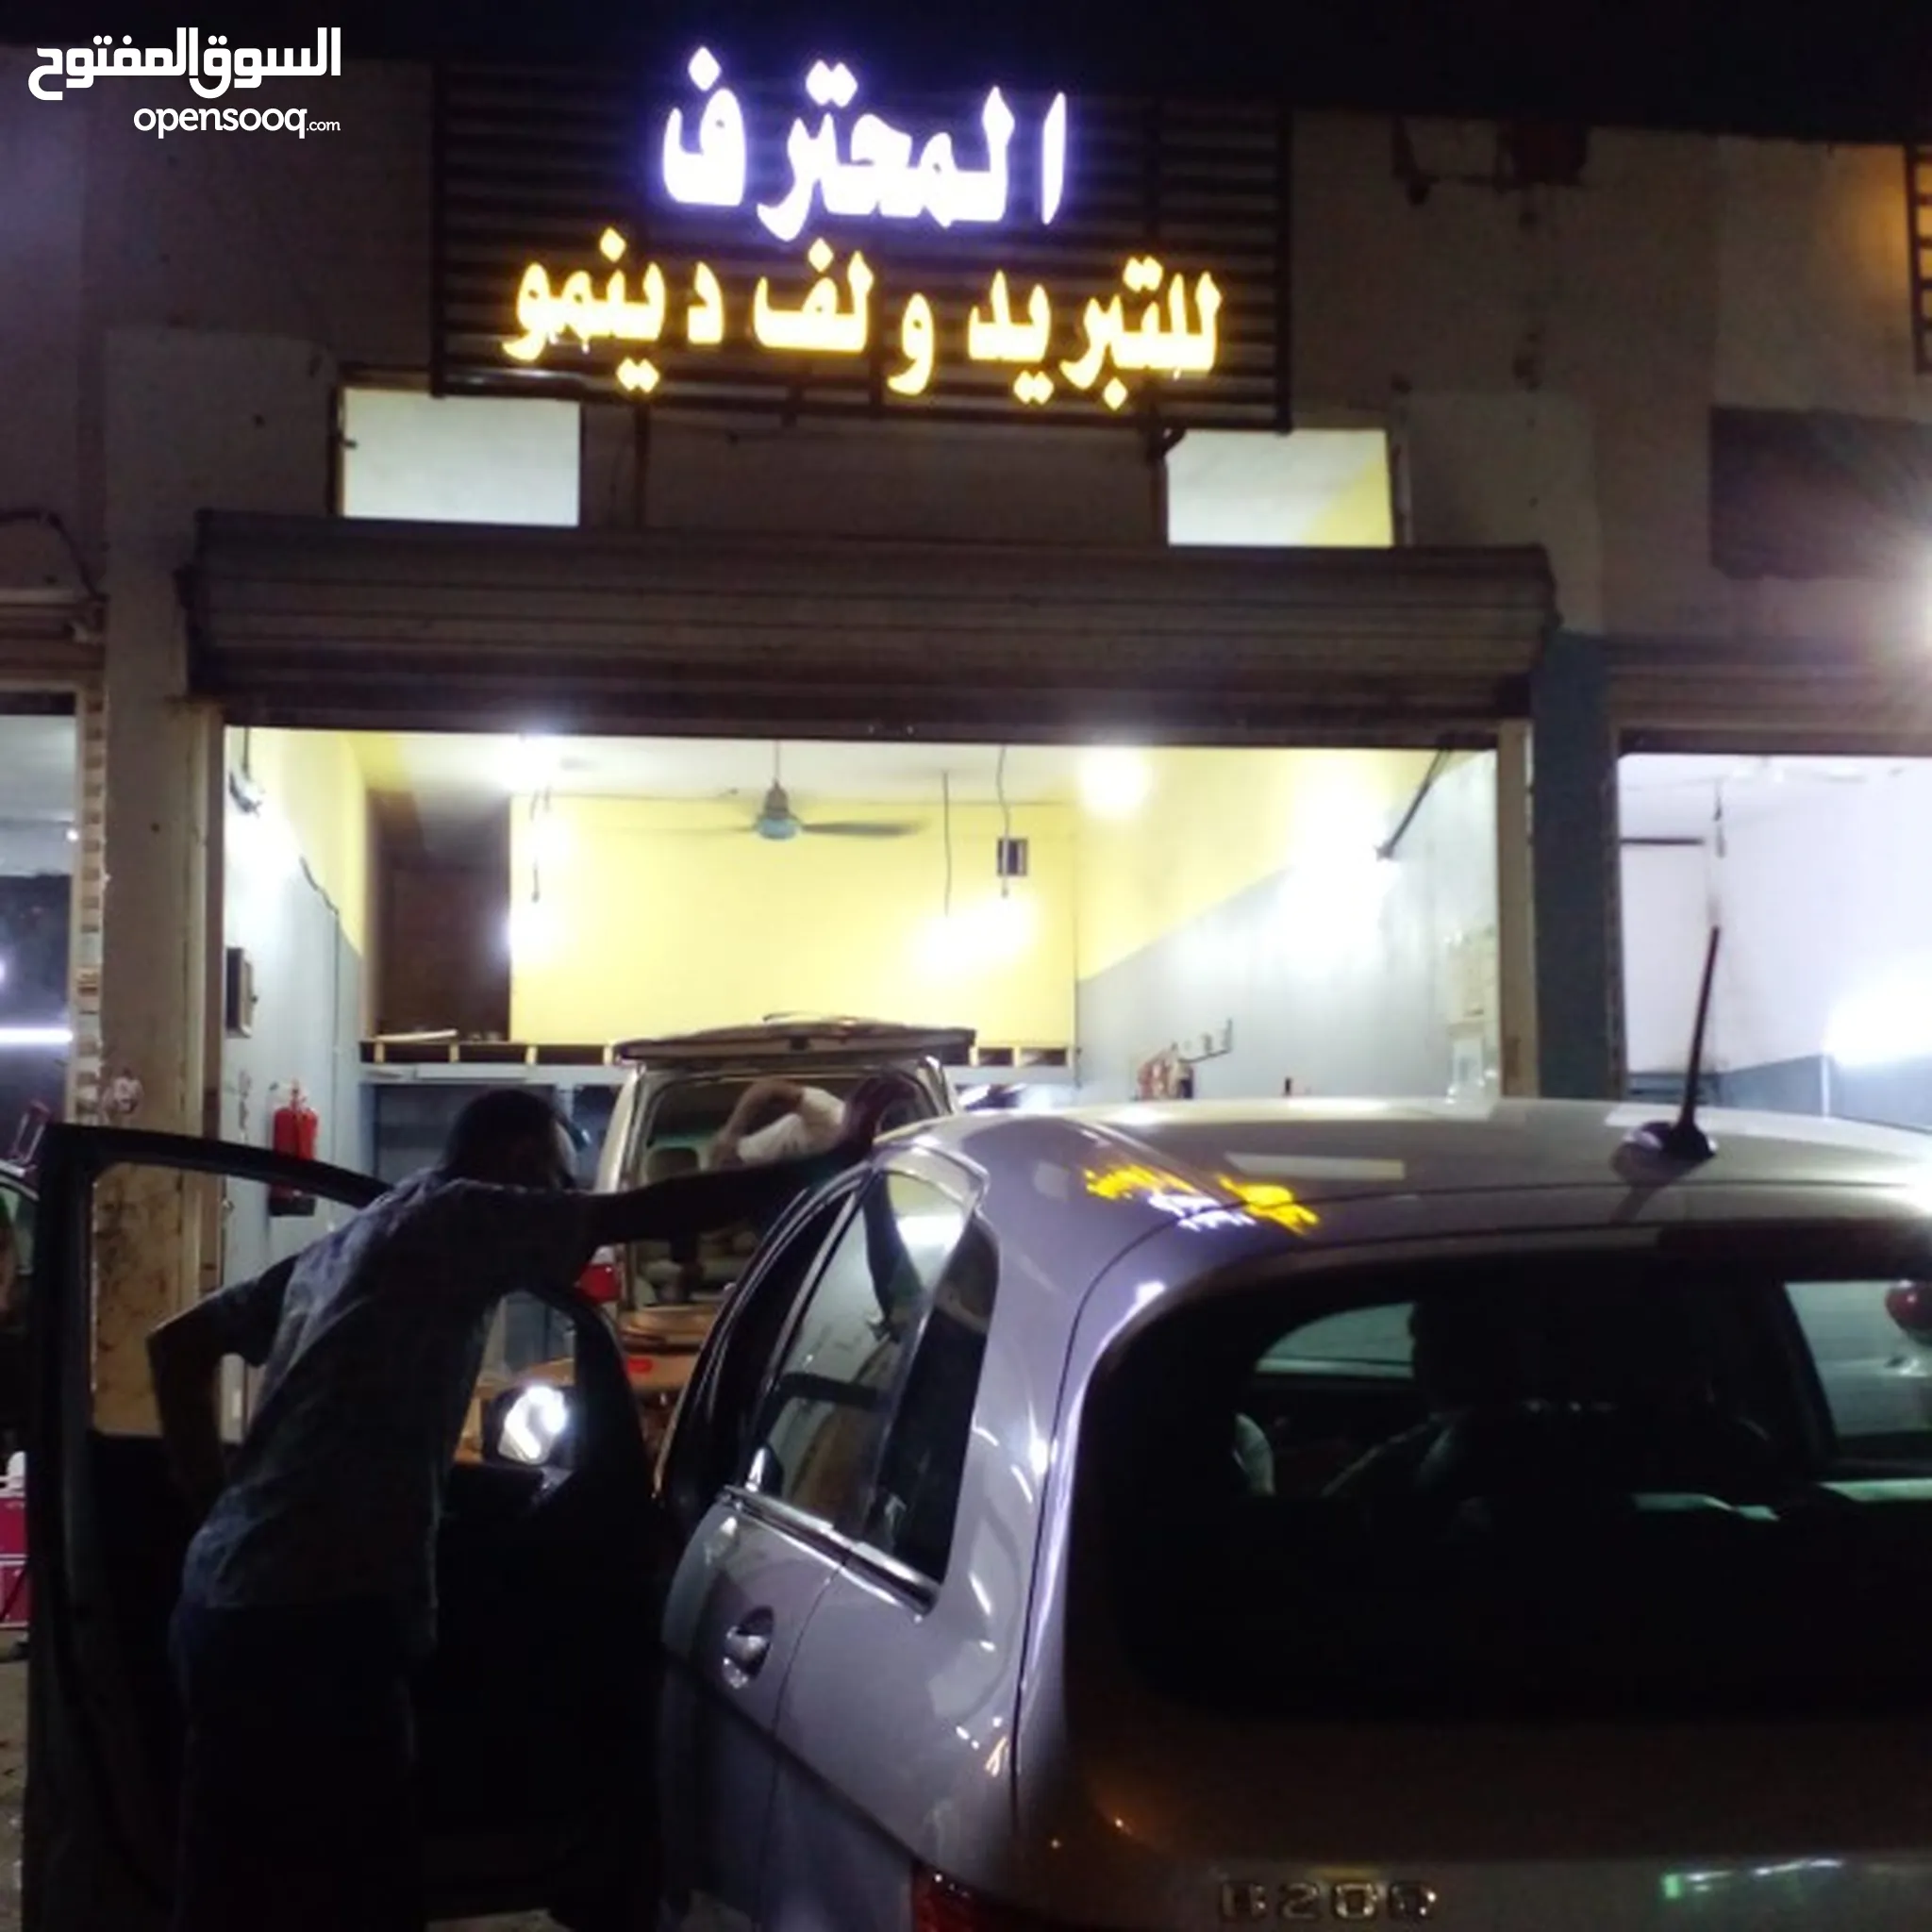 خدمات تصليح سيارات في مكة : 24 ساعة : تصليح سيارات متنقل ميكانيكي | السوق  المفتوح